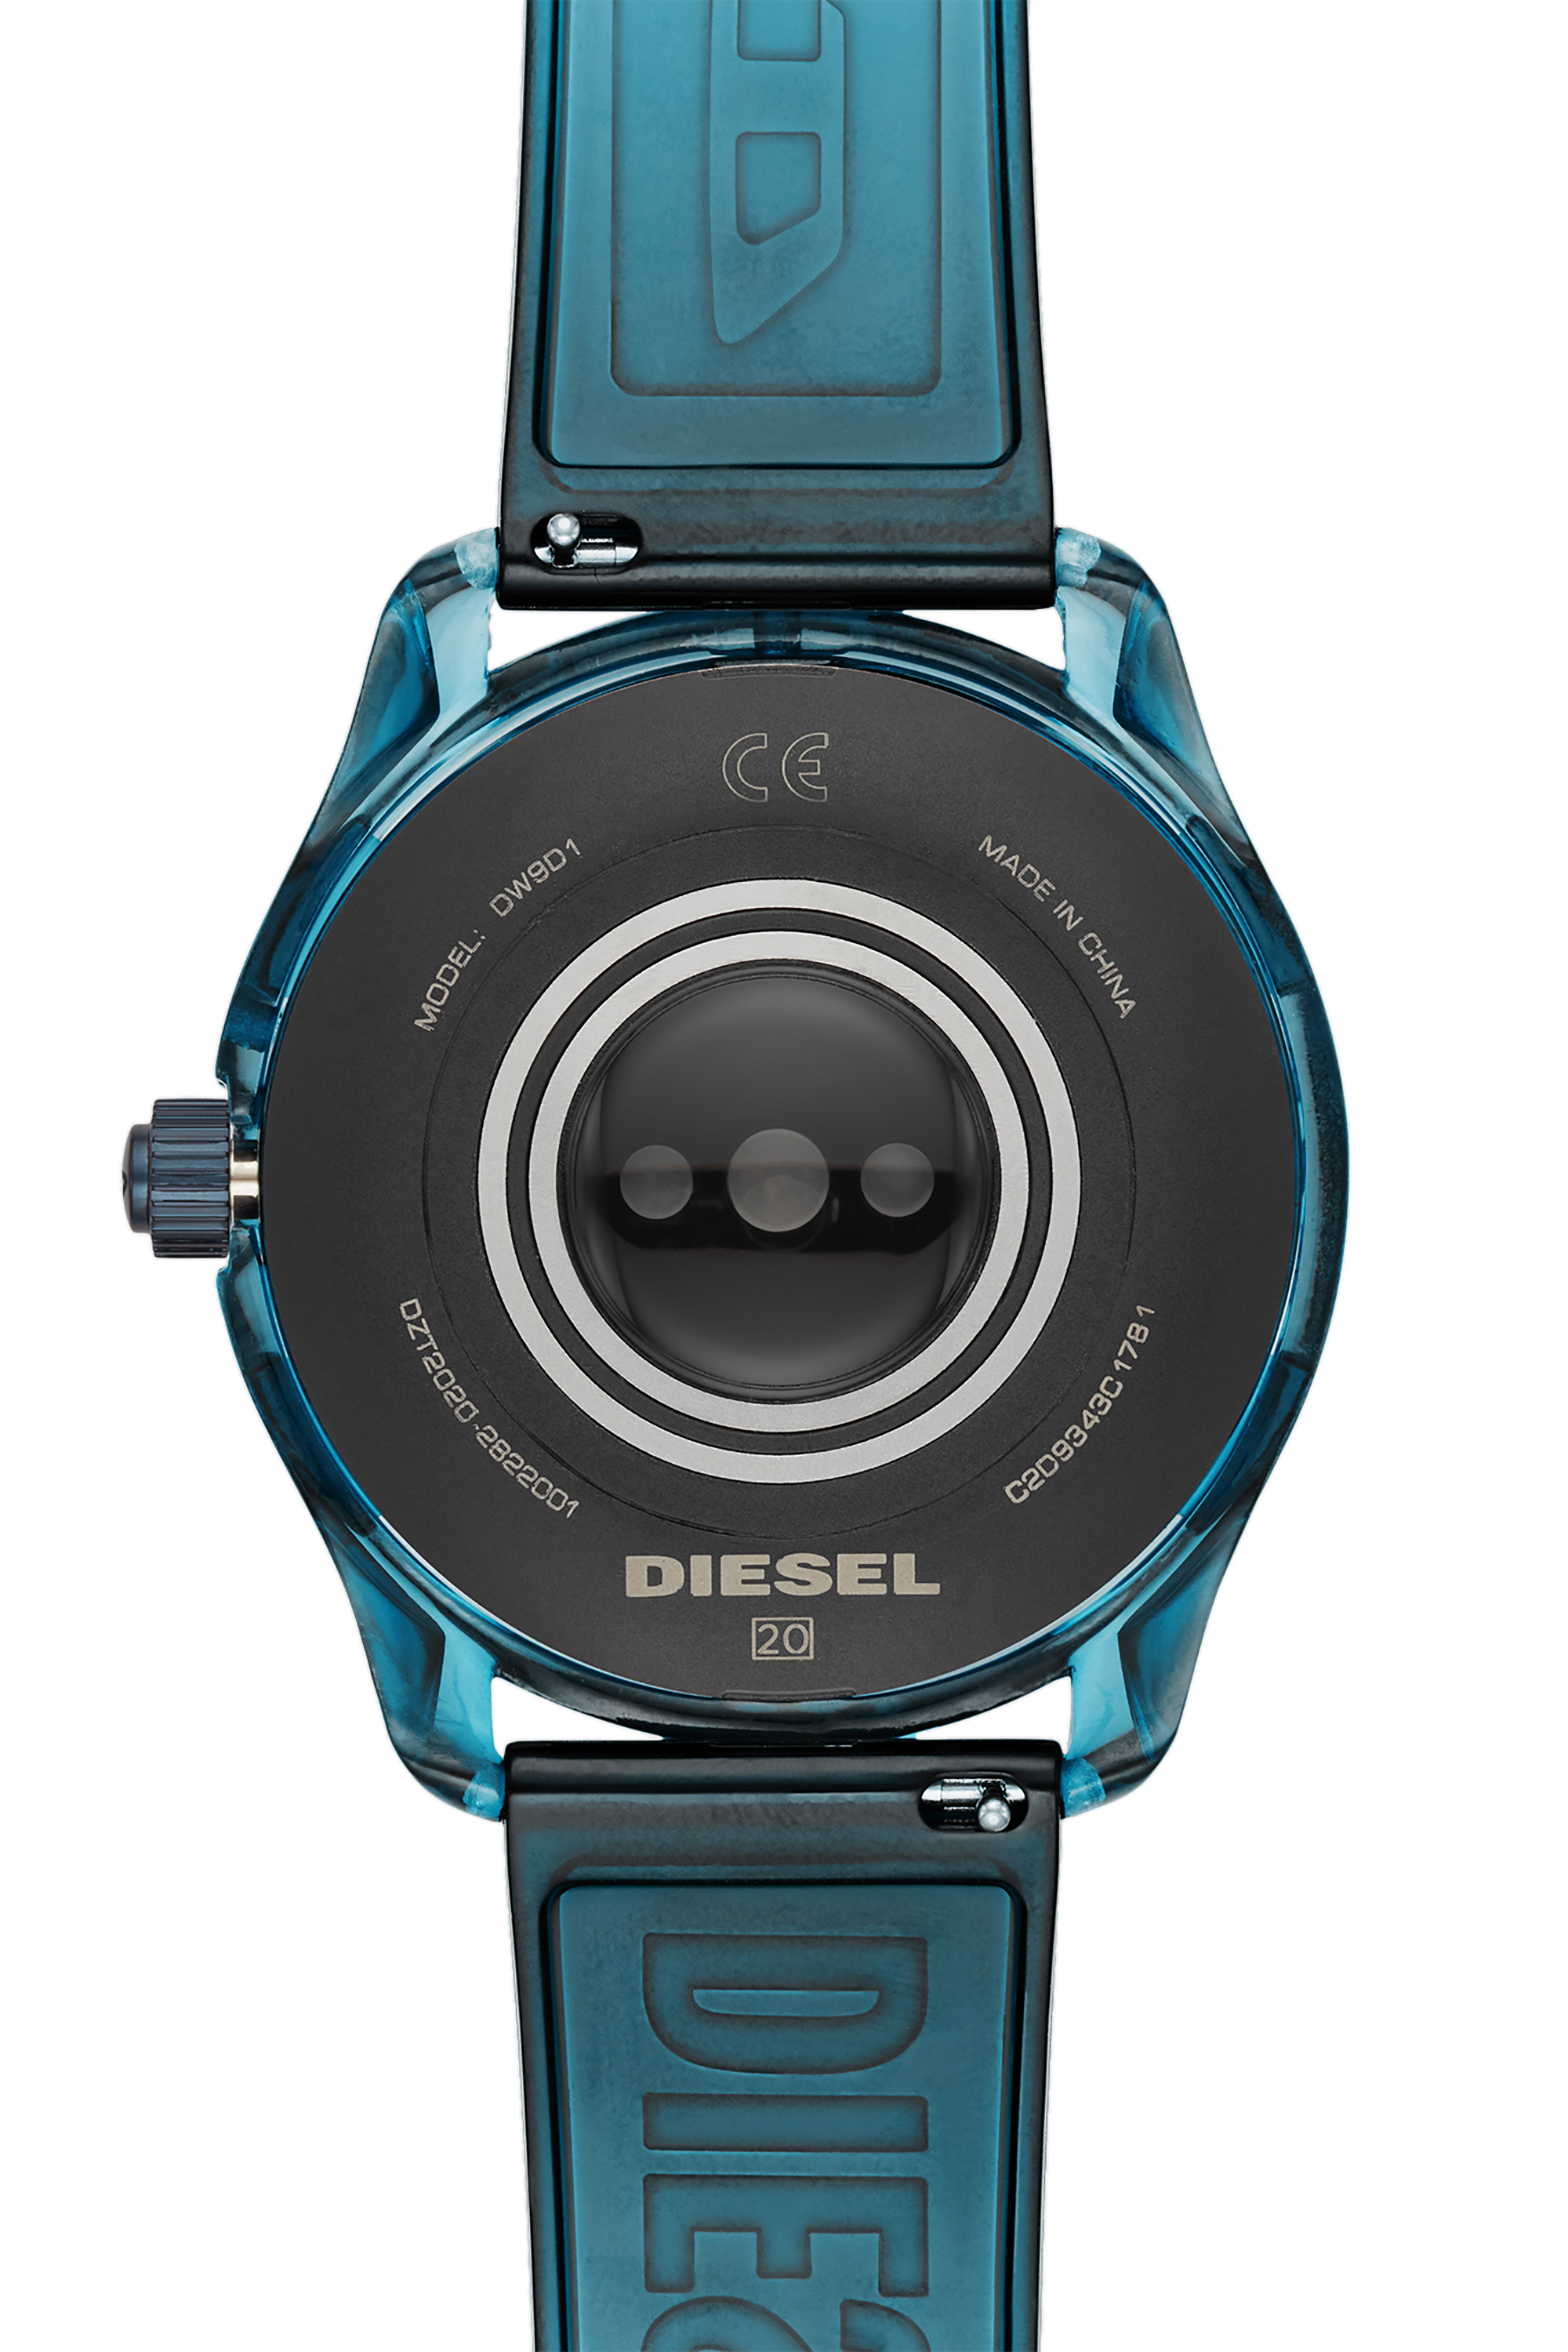 Diesel - DT2020, Blu - Image 4